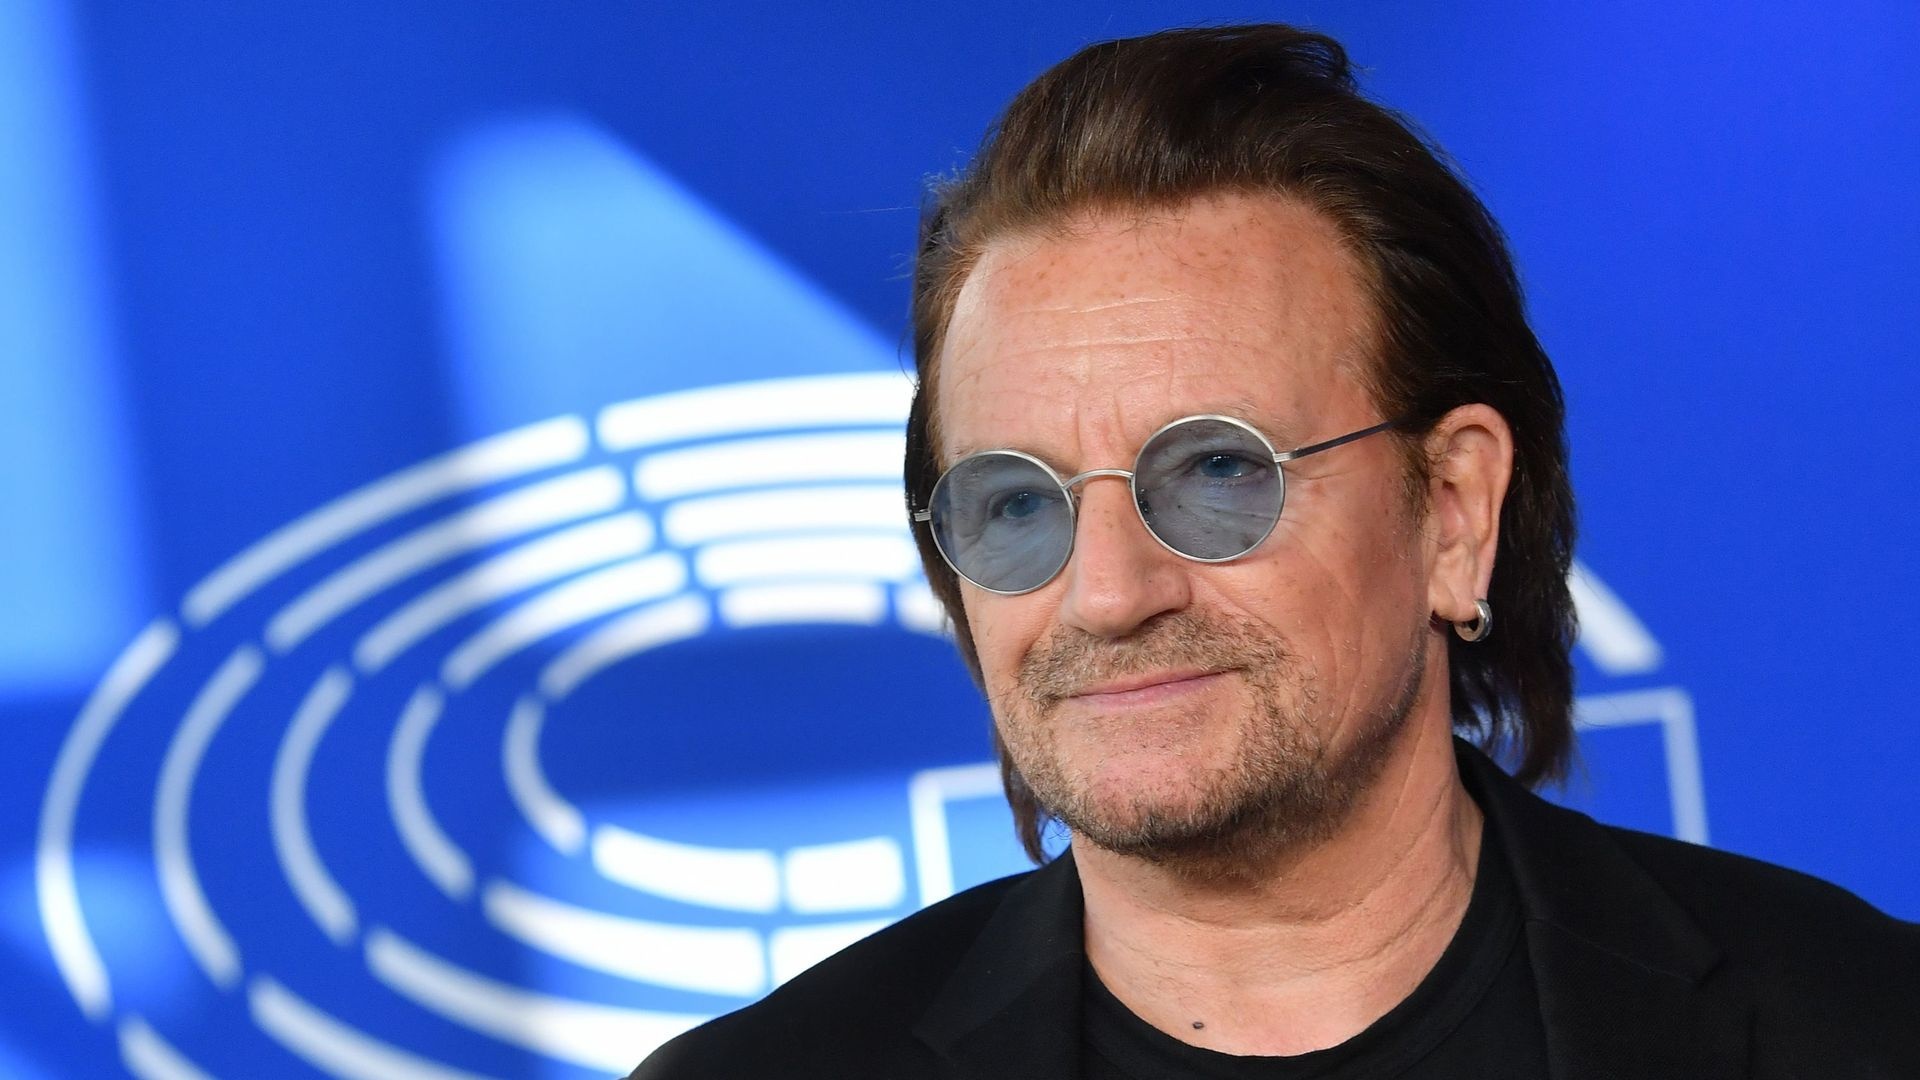 Bono U2 au Parlement europen pour soutenir un nouveau partenariat UE-Afrique 1920x1080